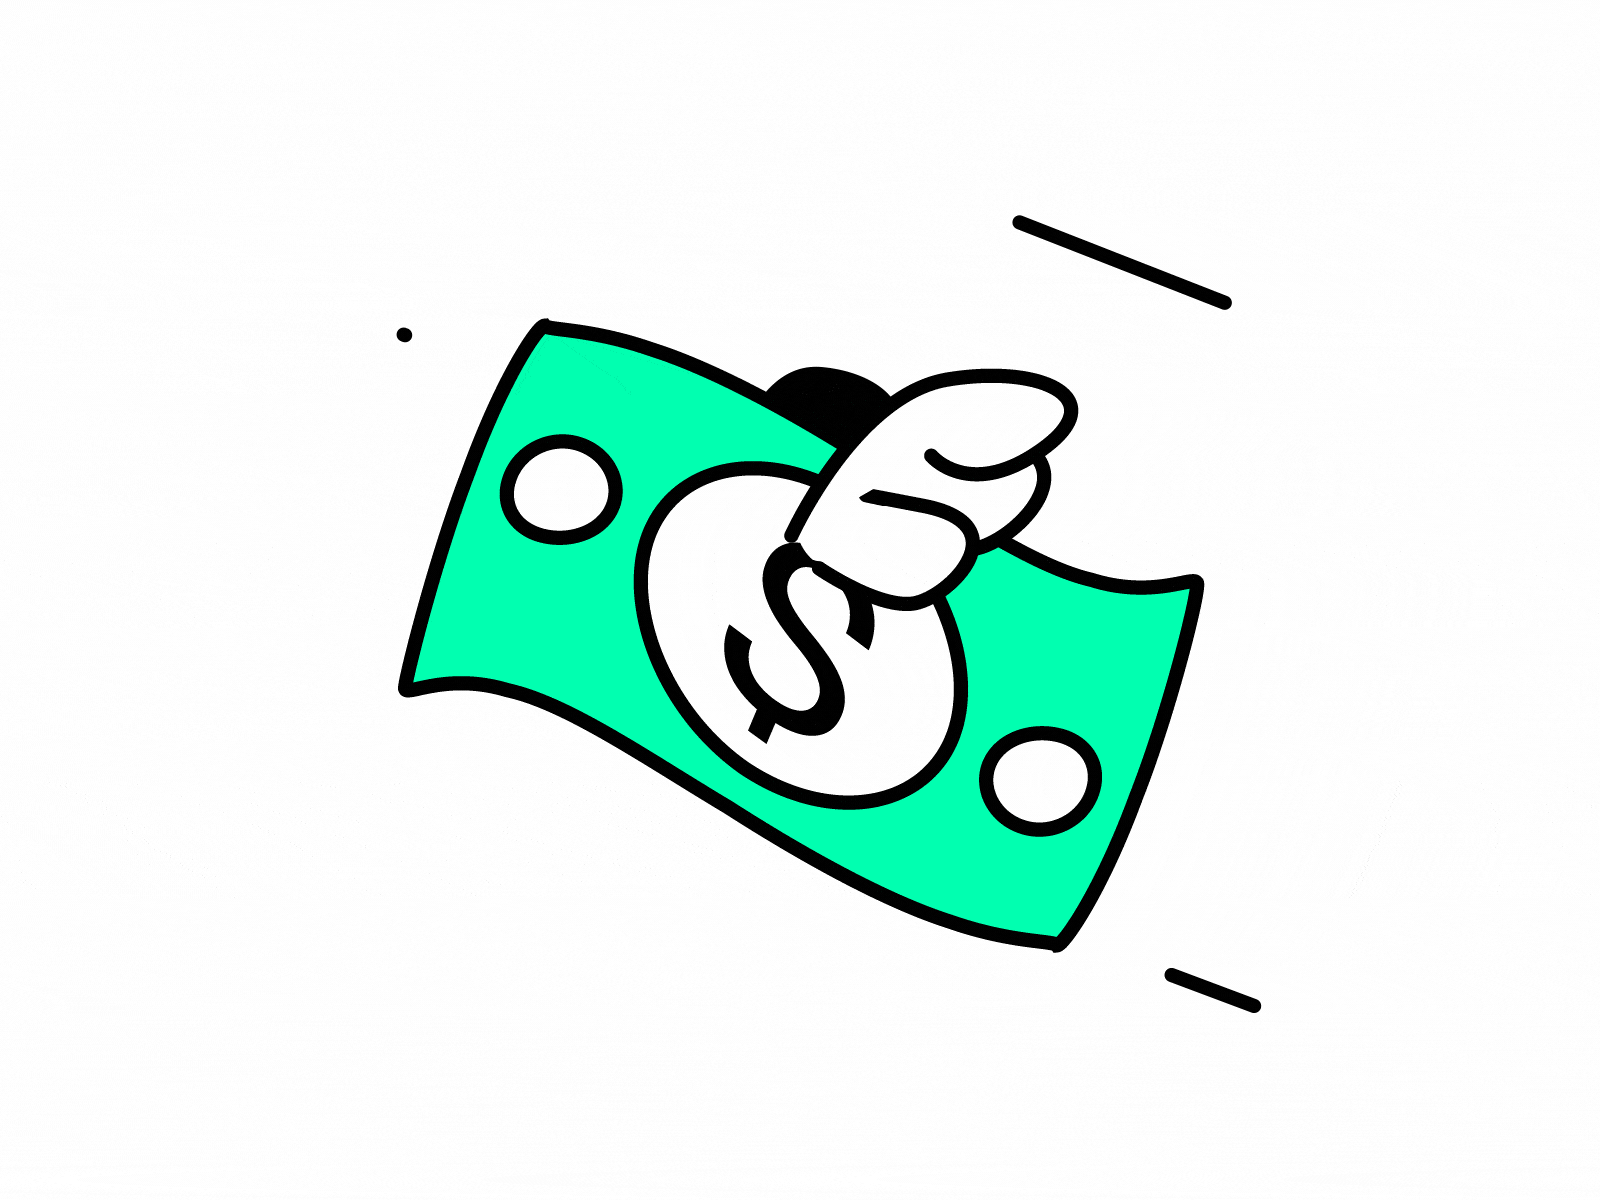 Emoji in motion #2 2d animation bank note bill discord dollar eaas eaas.global emoji flat flying illustration loop looped money sticker telegram vector wings